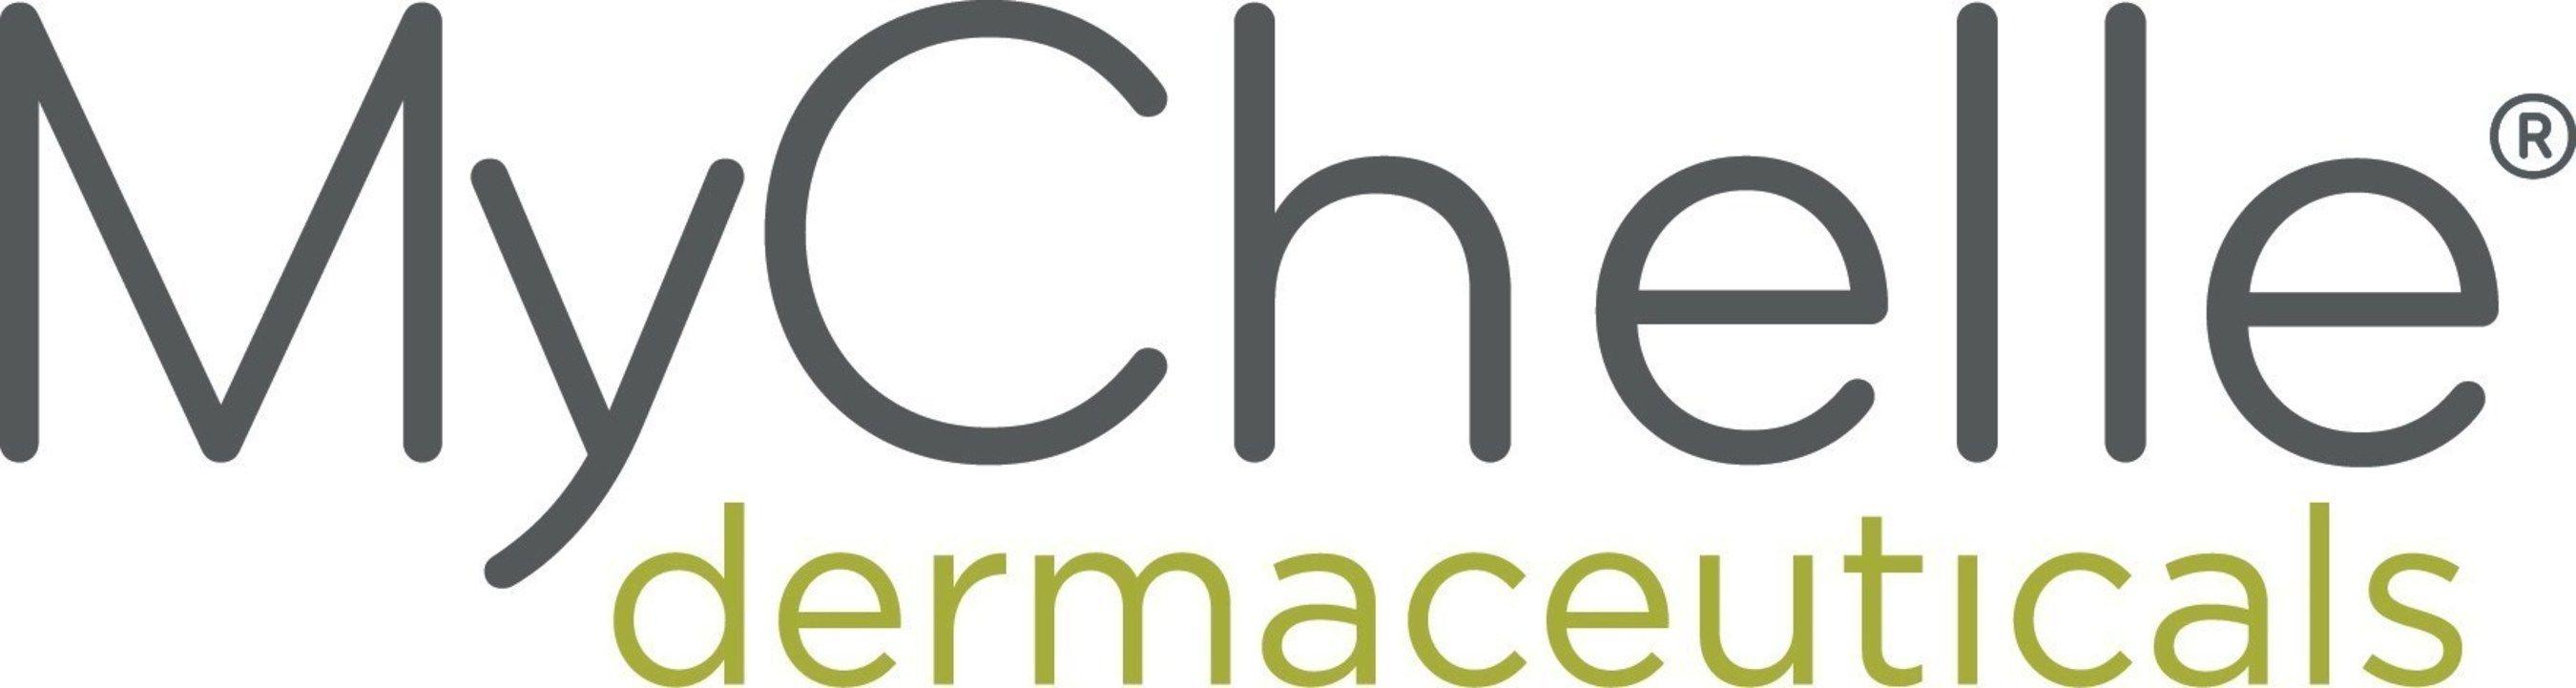 ULTA Beauty Logo - MyChelle Dermaceuticals Announces New Distribution Partnership with ...